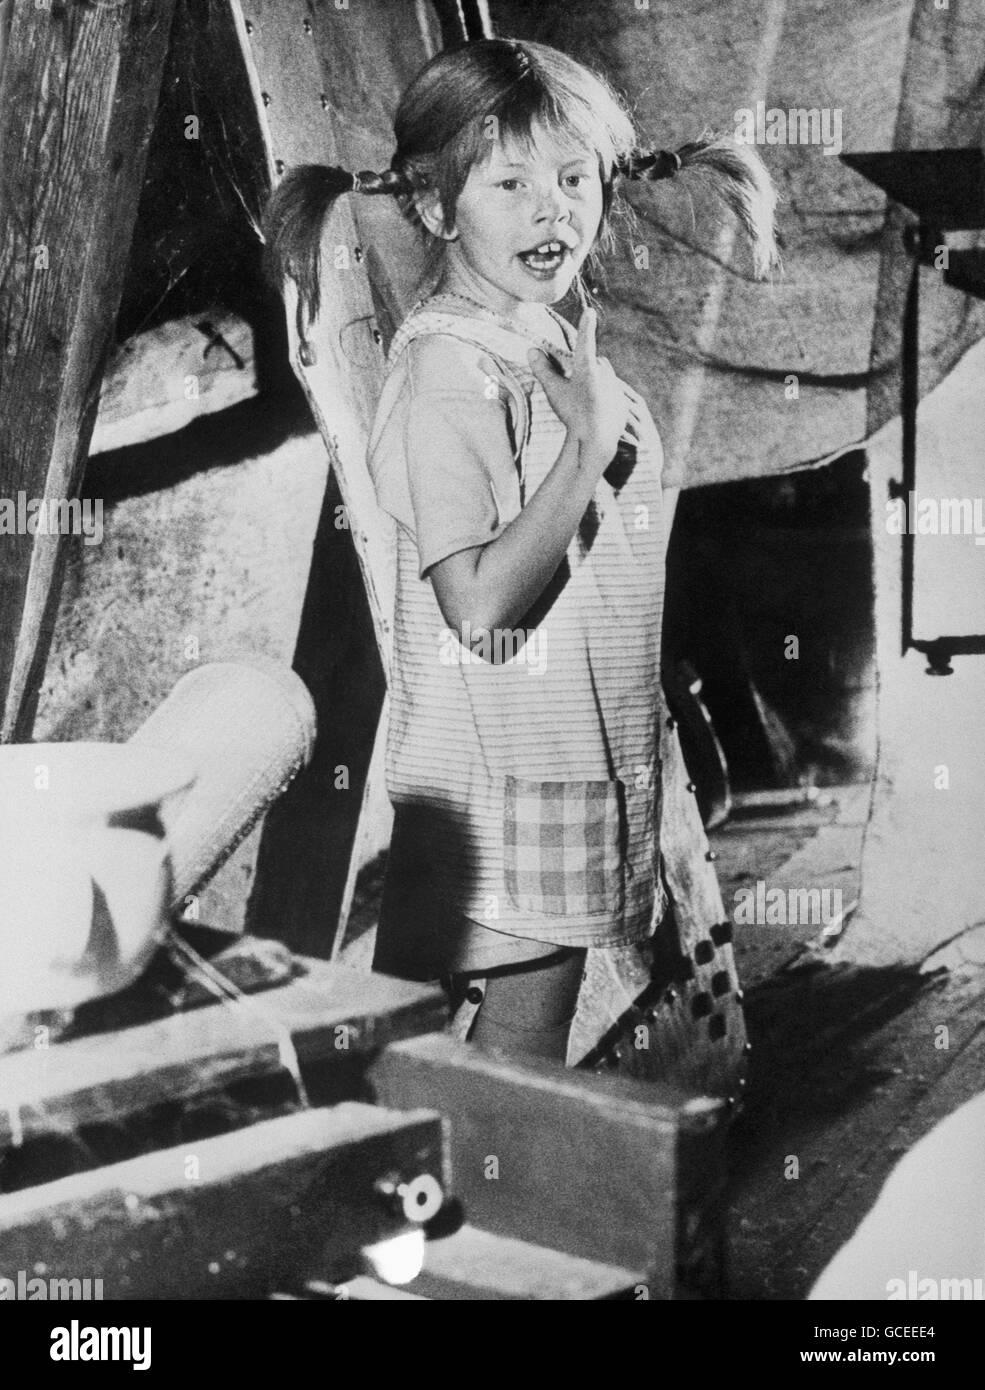 Die Kinderdarstellerin Inger Nilsson, die vom schwedischen Filmregisseur Olle Hellbom ausgewählt wurde, um „Pippi Langstrumpf“ in einem Film zu porträtieren, der auf den Geschichten der Kinderschriftstellerin Astrid Lindgren basiert. Stockfoto